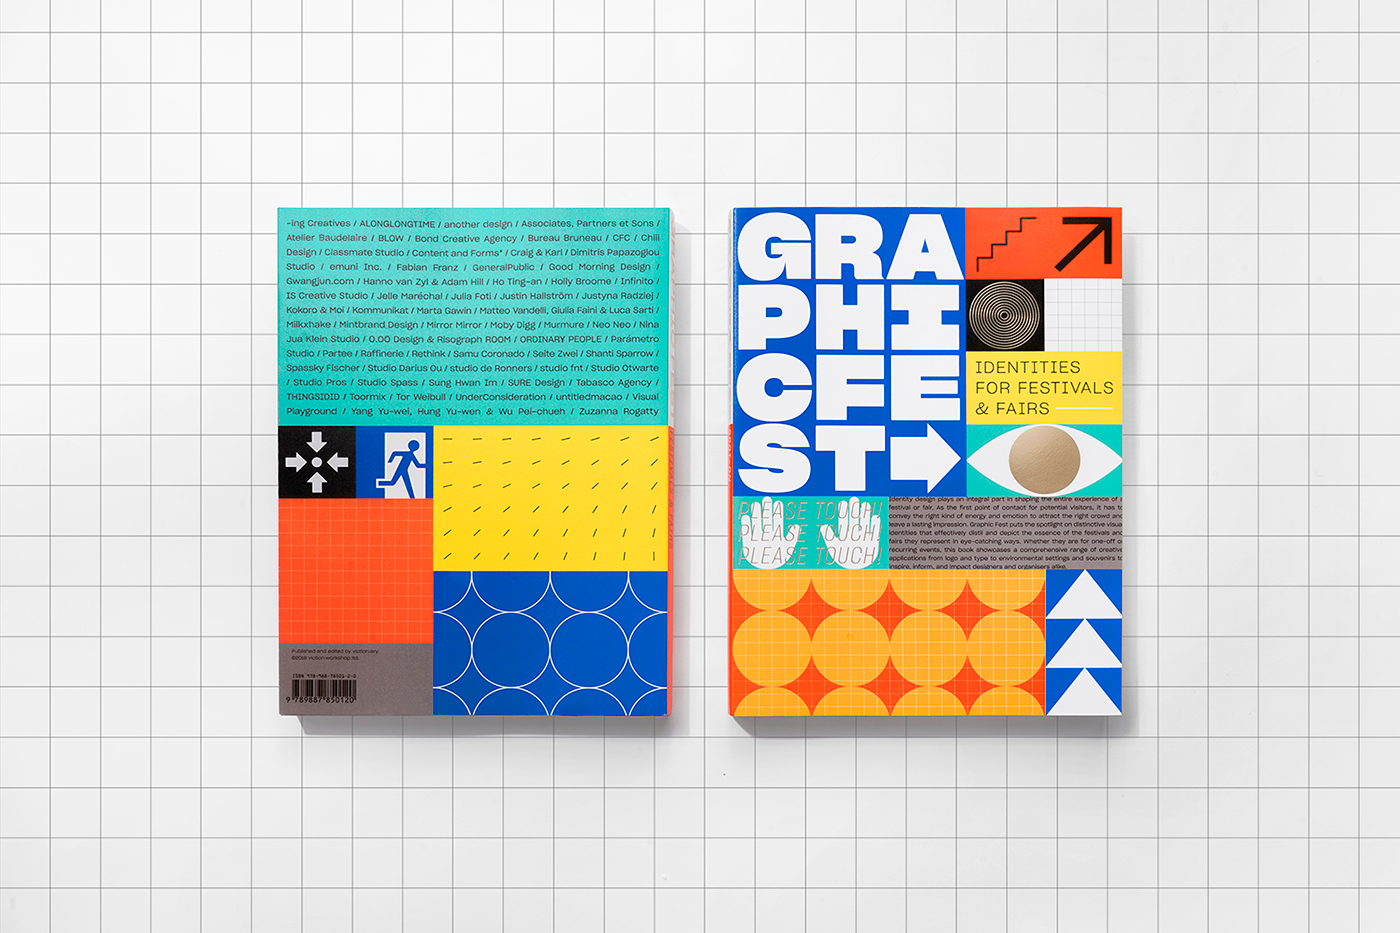 graphic festival branding  Event identity book design poster venue Fair fluorescent